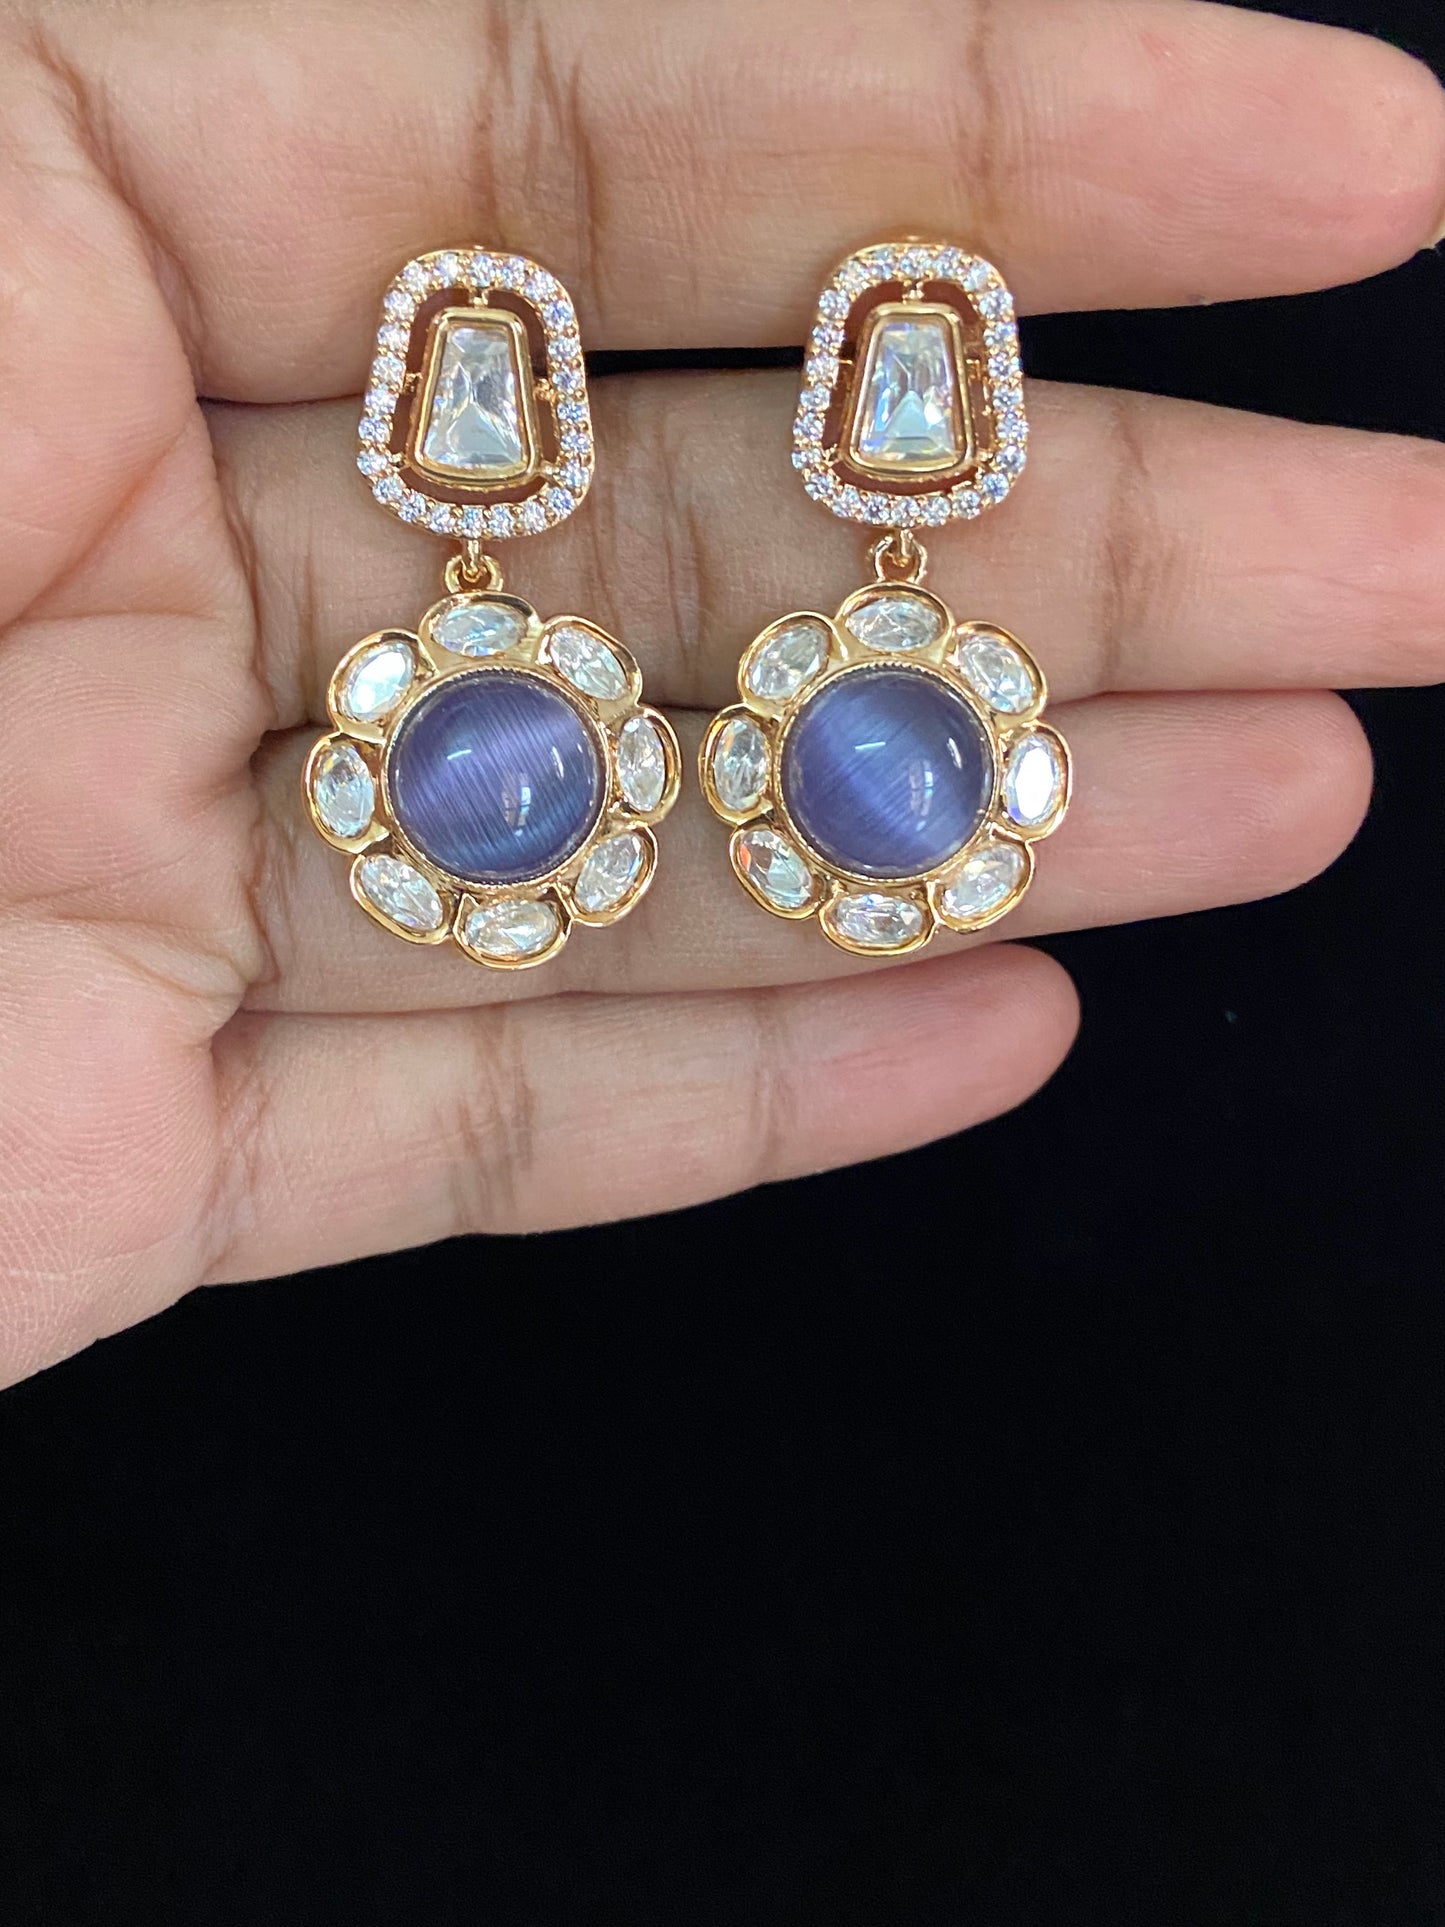 Kundan earrings | Indian earrings